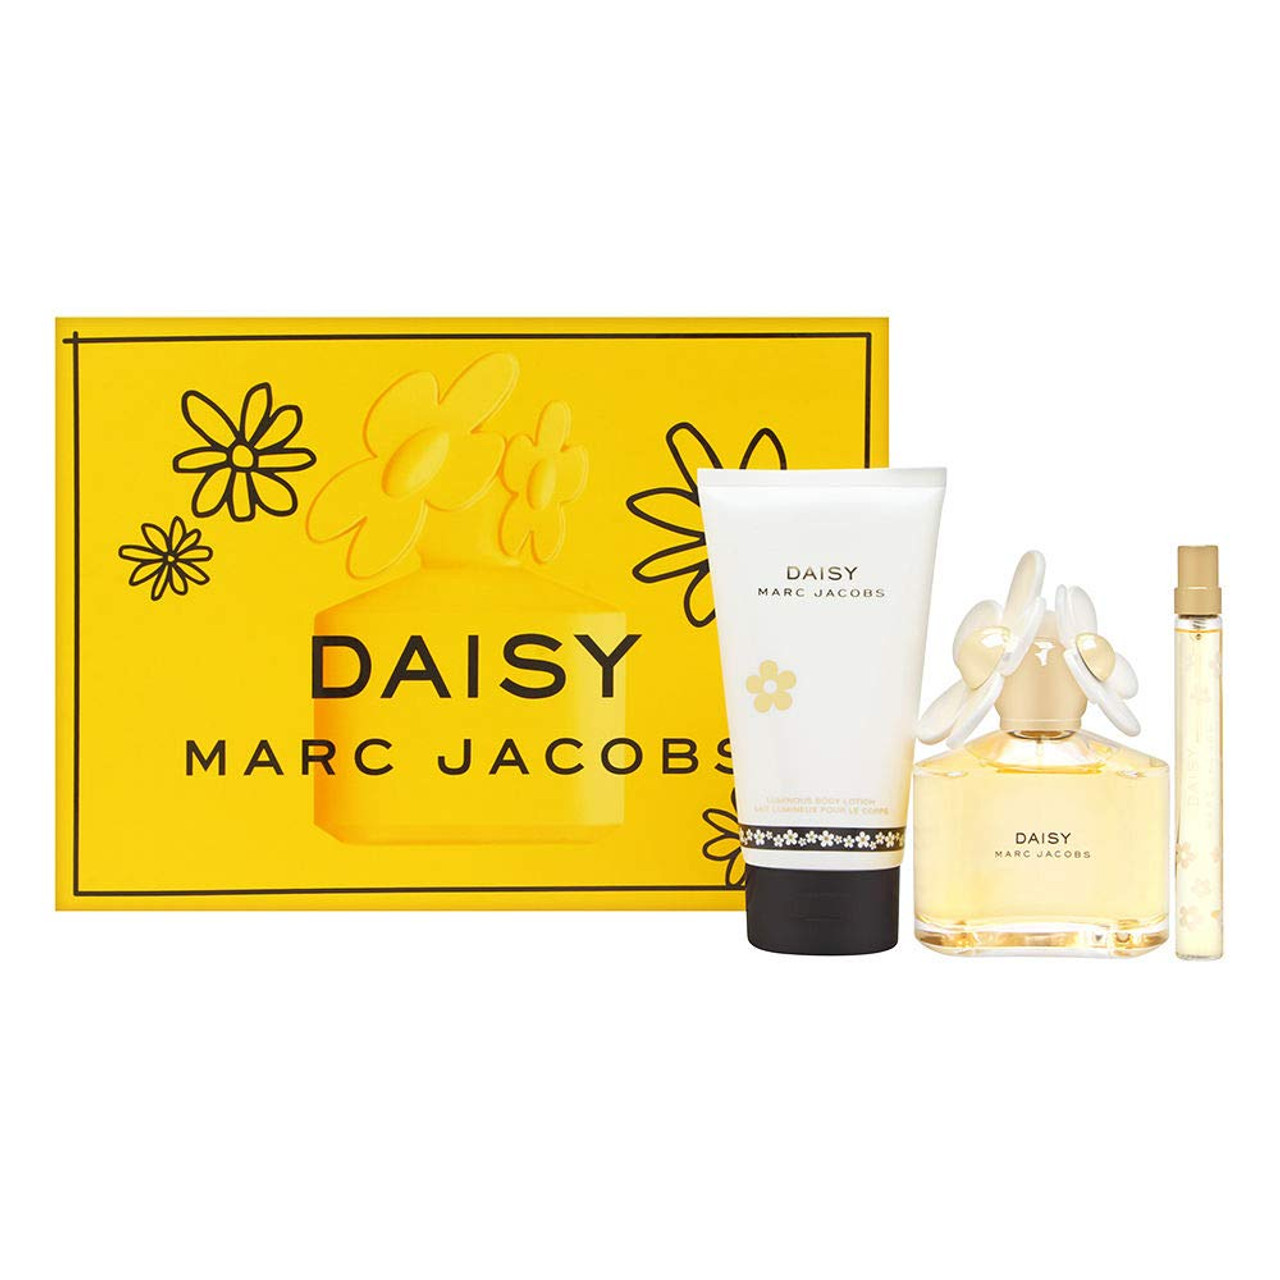  Marc Jacobs Marc jacobs daisy love set: 3.4 oz eau de